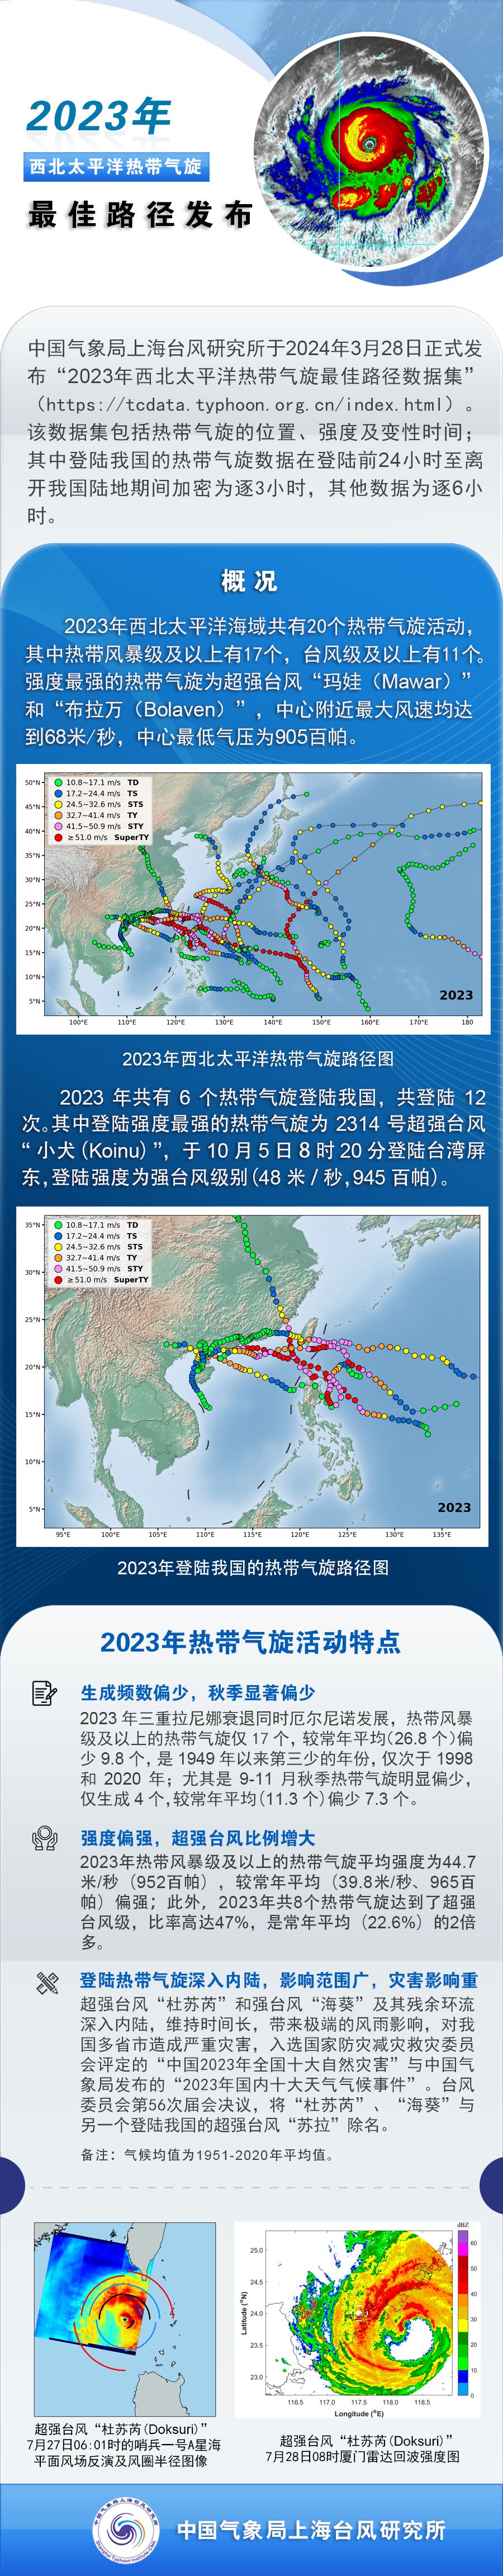 2023年西北太平洋热带气旋最佳路径发布